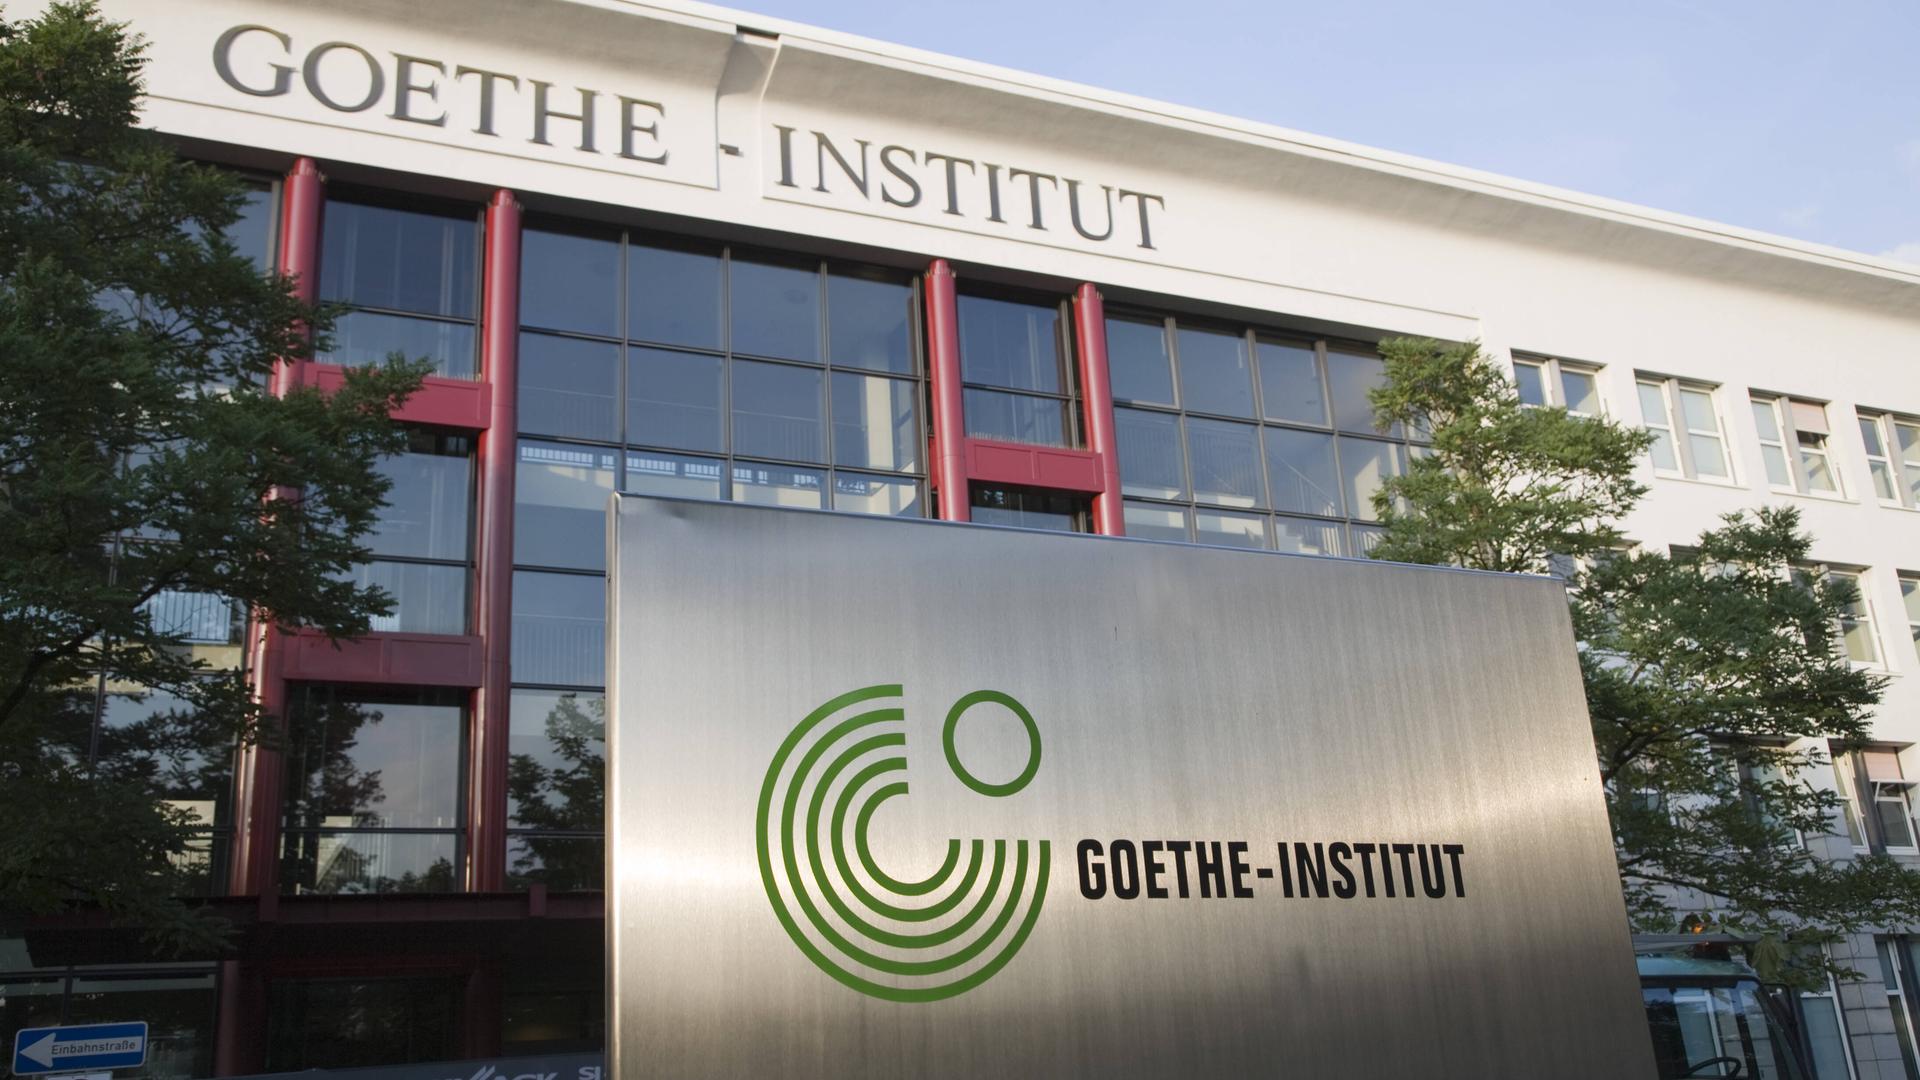 Stellenabbau und Standortschließungen - Bundestag erzwingt Reform des Goethe-Instituts